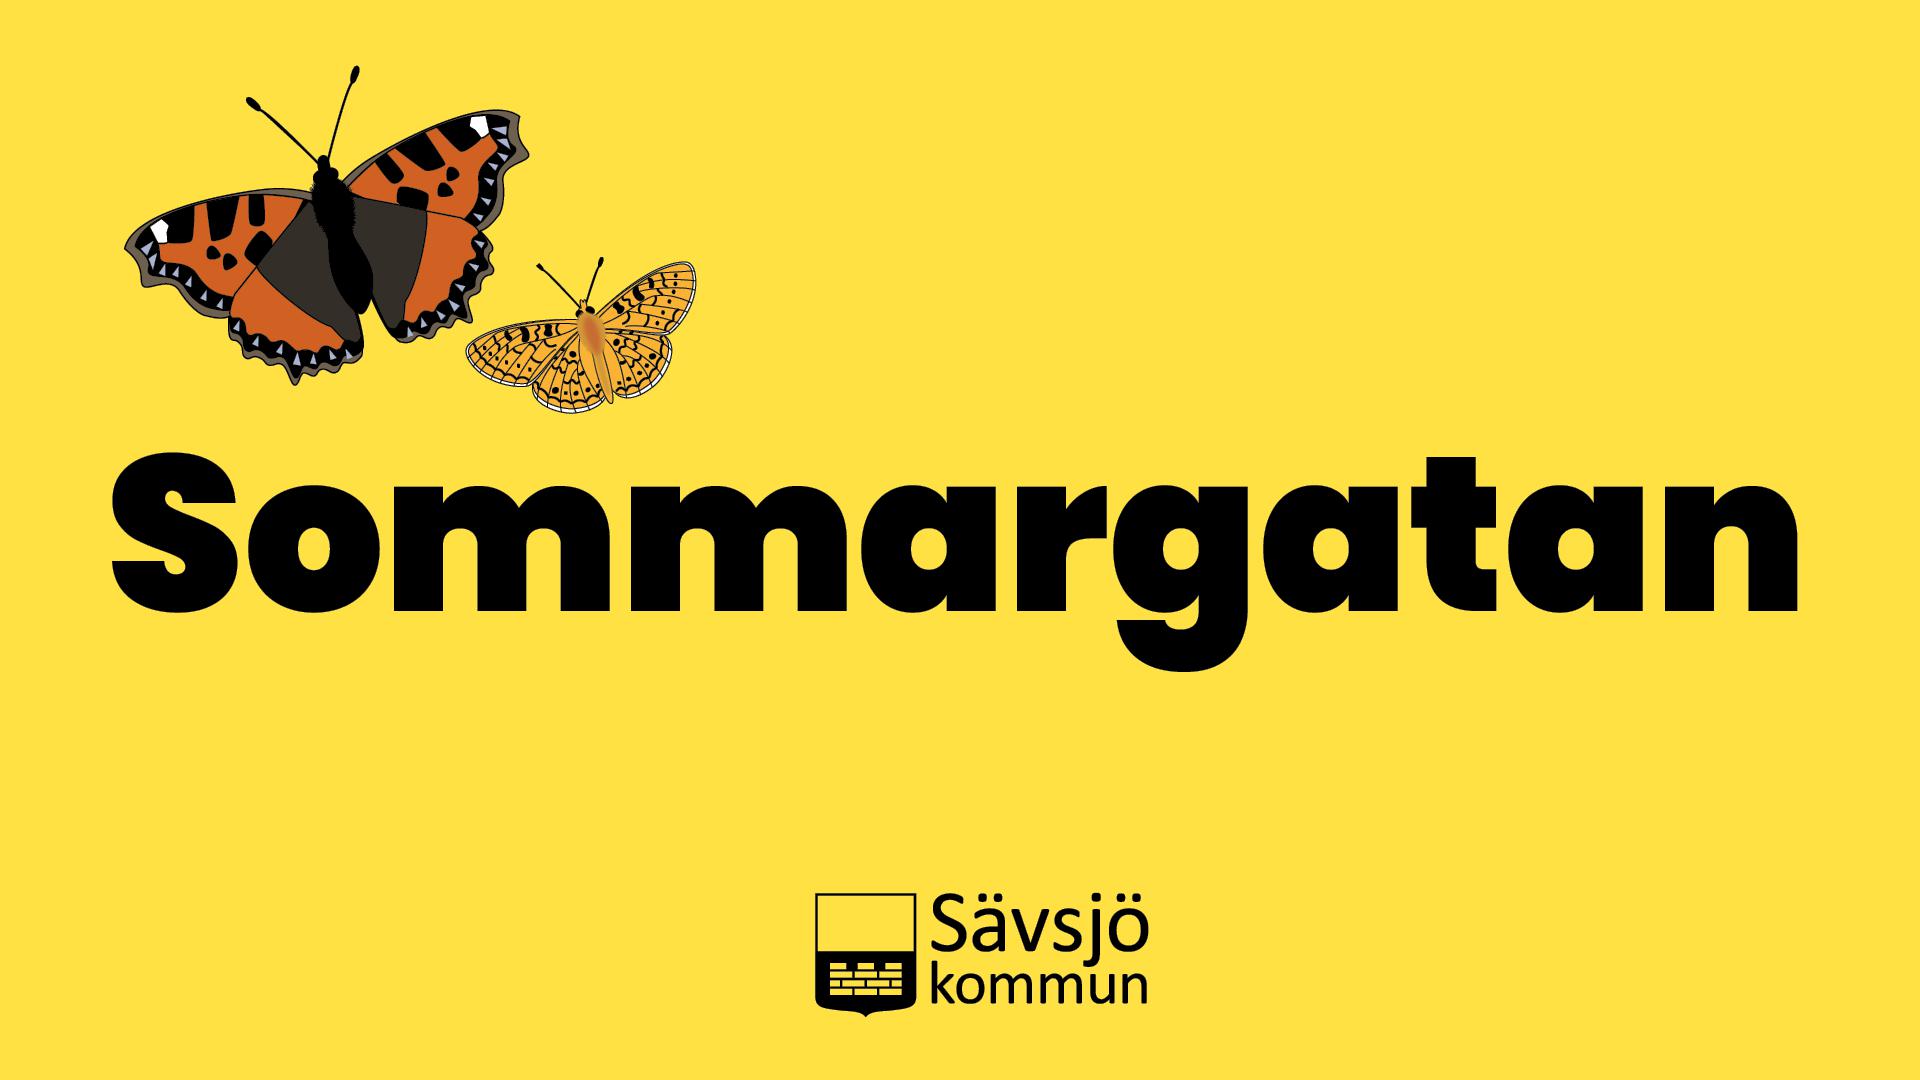 Text Sommargatan, fjärilar och logga Sävsjö kommun.